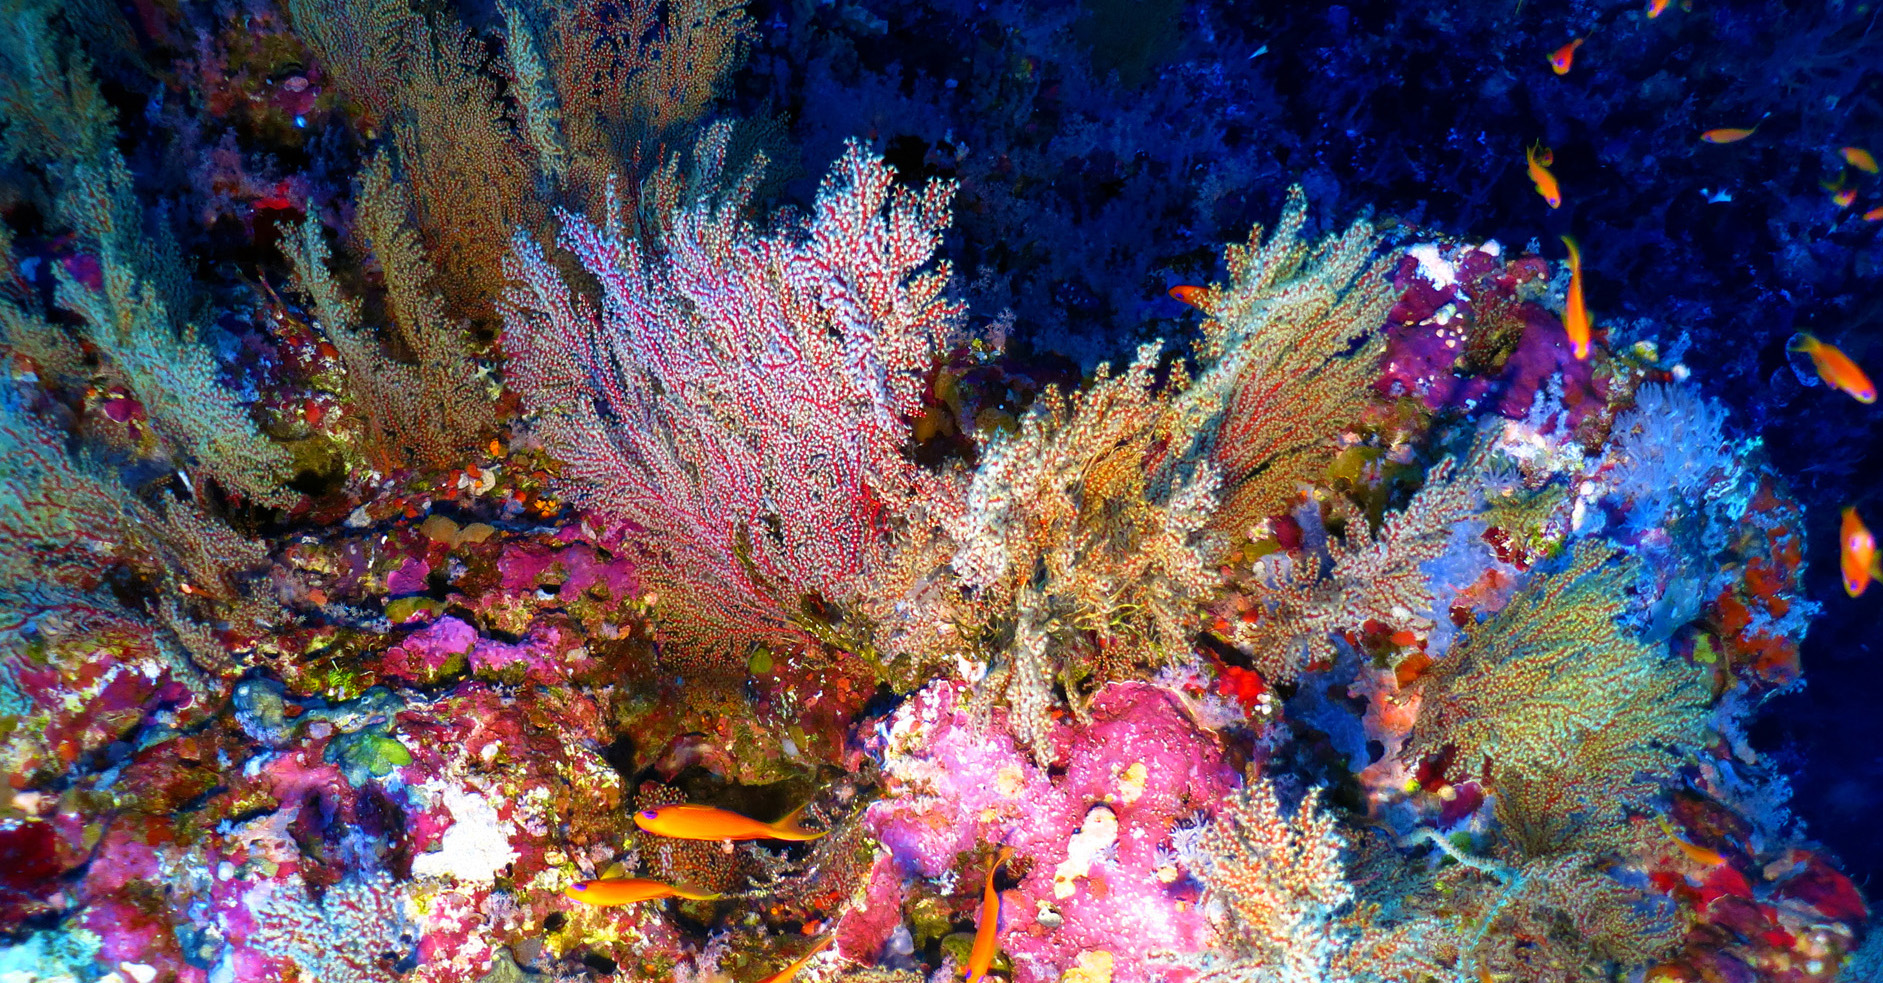 Marine aquarium with corals